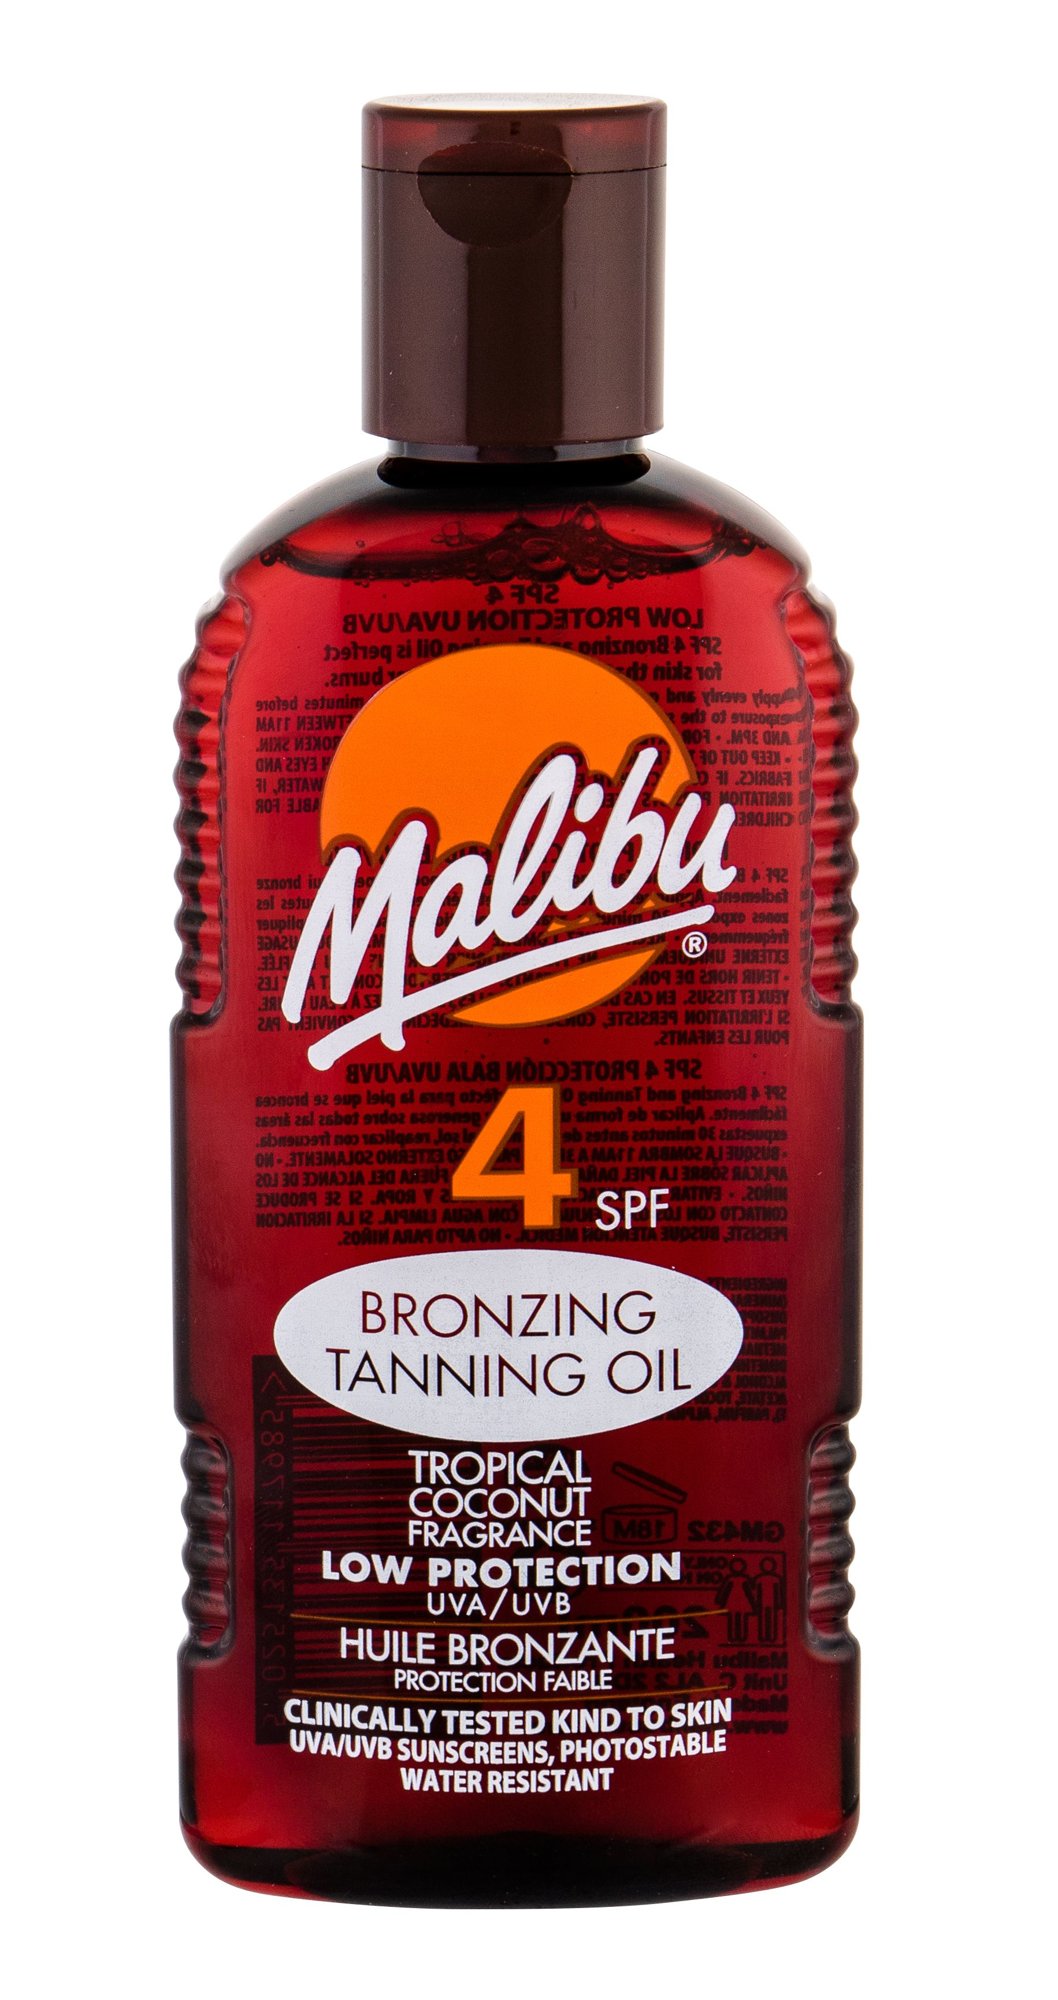 Malibu Bronzing Tanning Oil